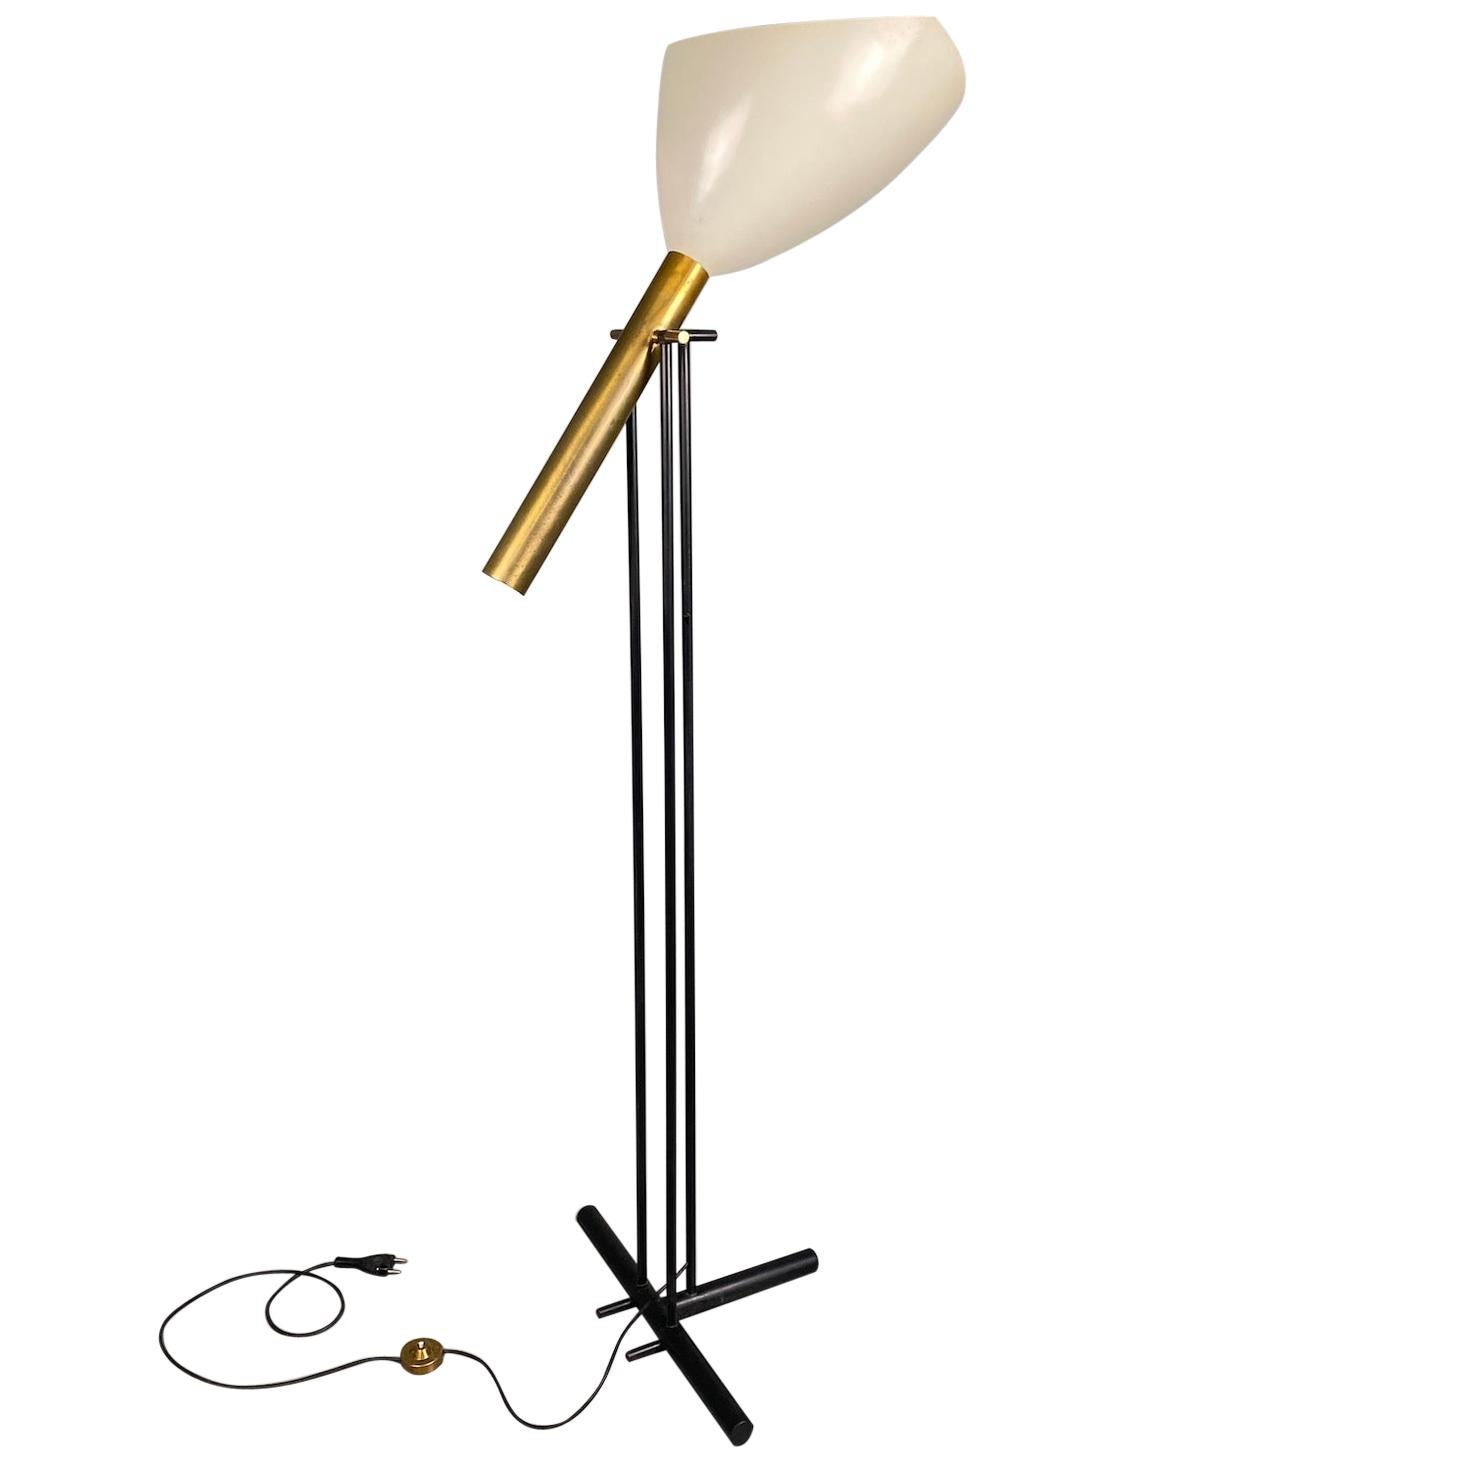 Rare Brass Floor Lamp Arredoluce Angelo Lelii Model 12627, Italian, 1950s